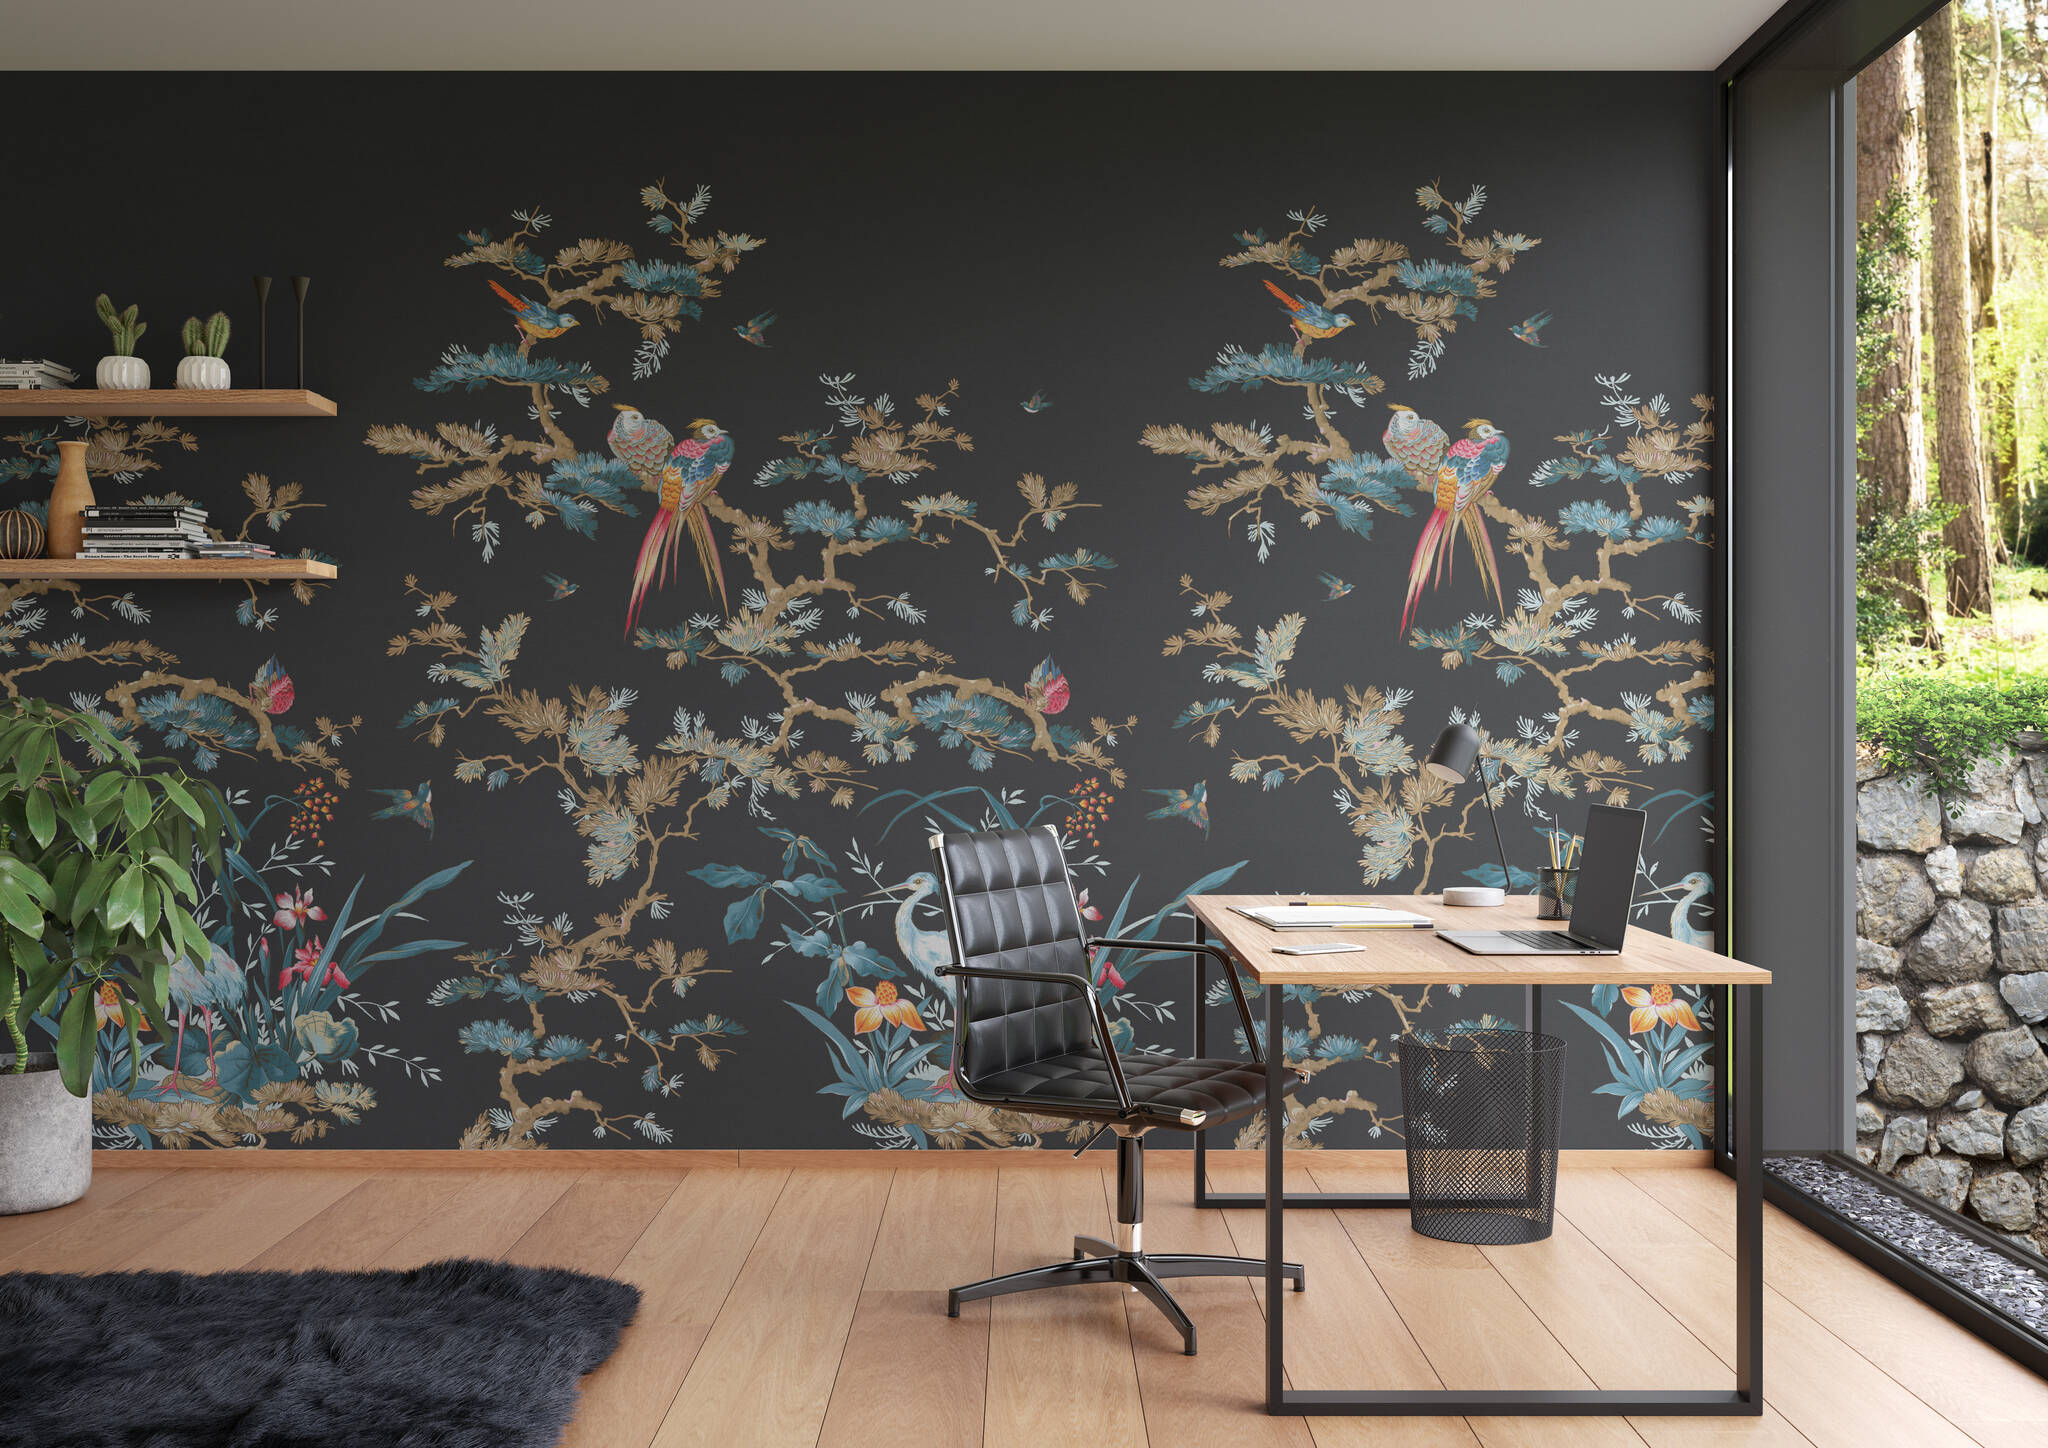 Arbeitszimmer mit Wandbild - Exotische Vogelwelt auf schwarzem Grund mit Storch, Papageigen und Singvögeln